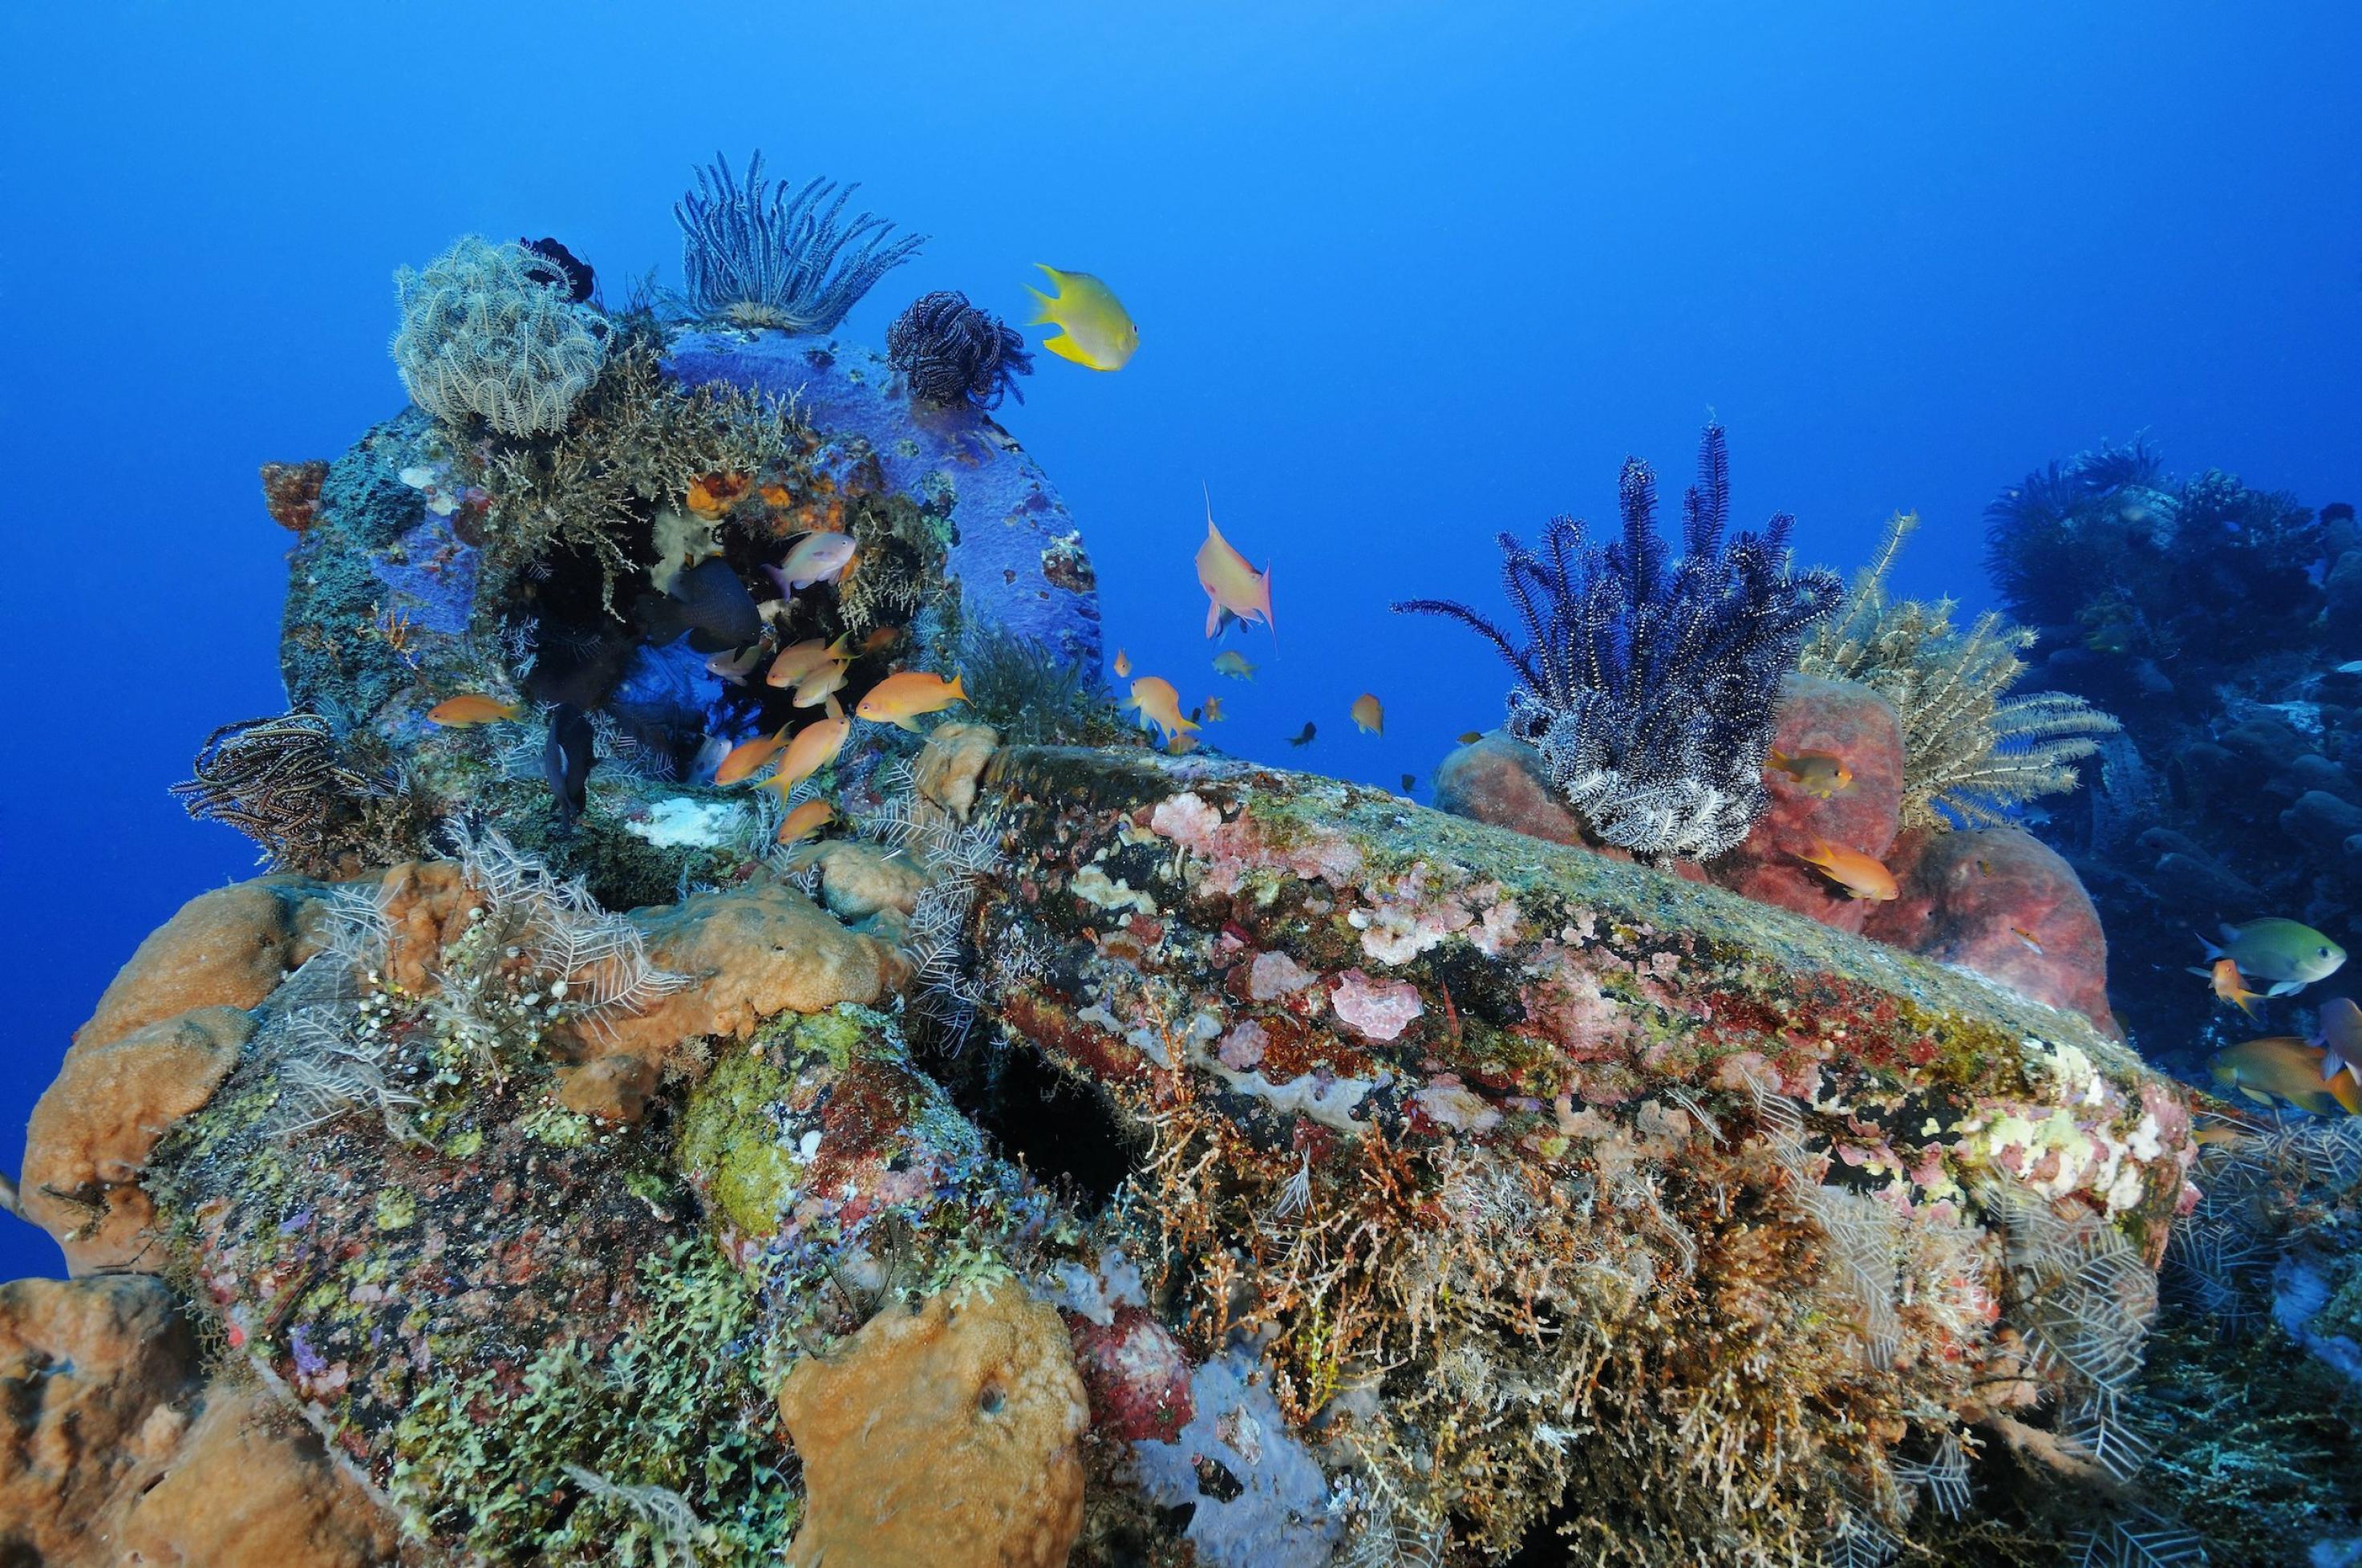 Fische, Korallen und andere bunte Tiere und Pflanzen haben ein künstliches Riff aus alten Autoreifen auf Bali, Indonesien, bewachsen. Die Reifen sind nur noch schemenhaft zu erkennen.